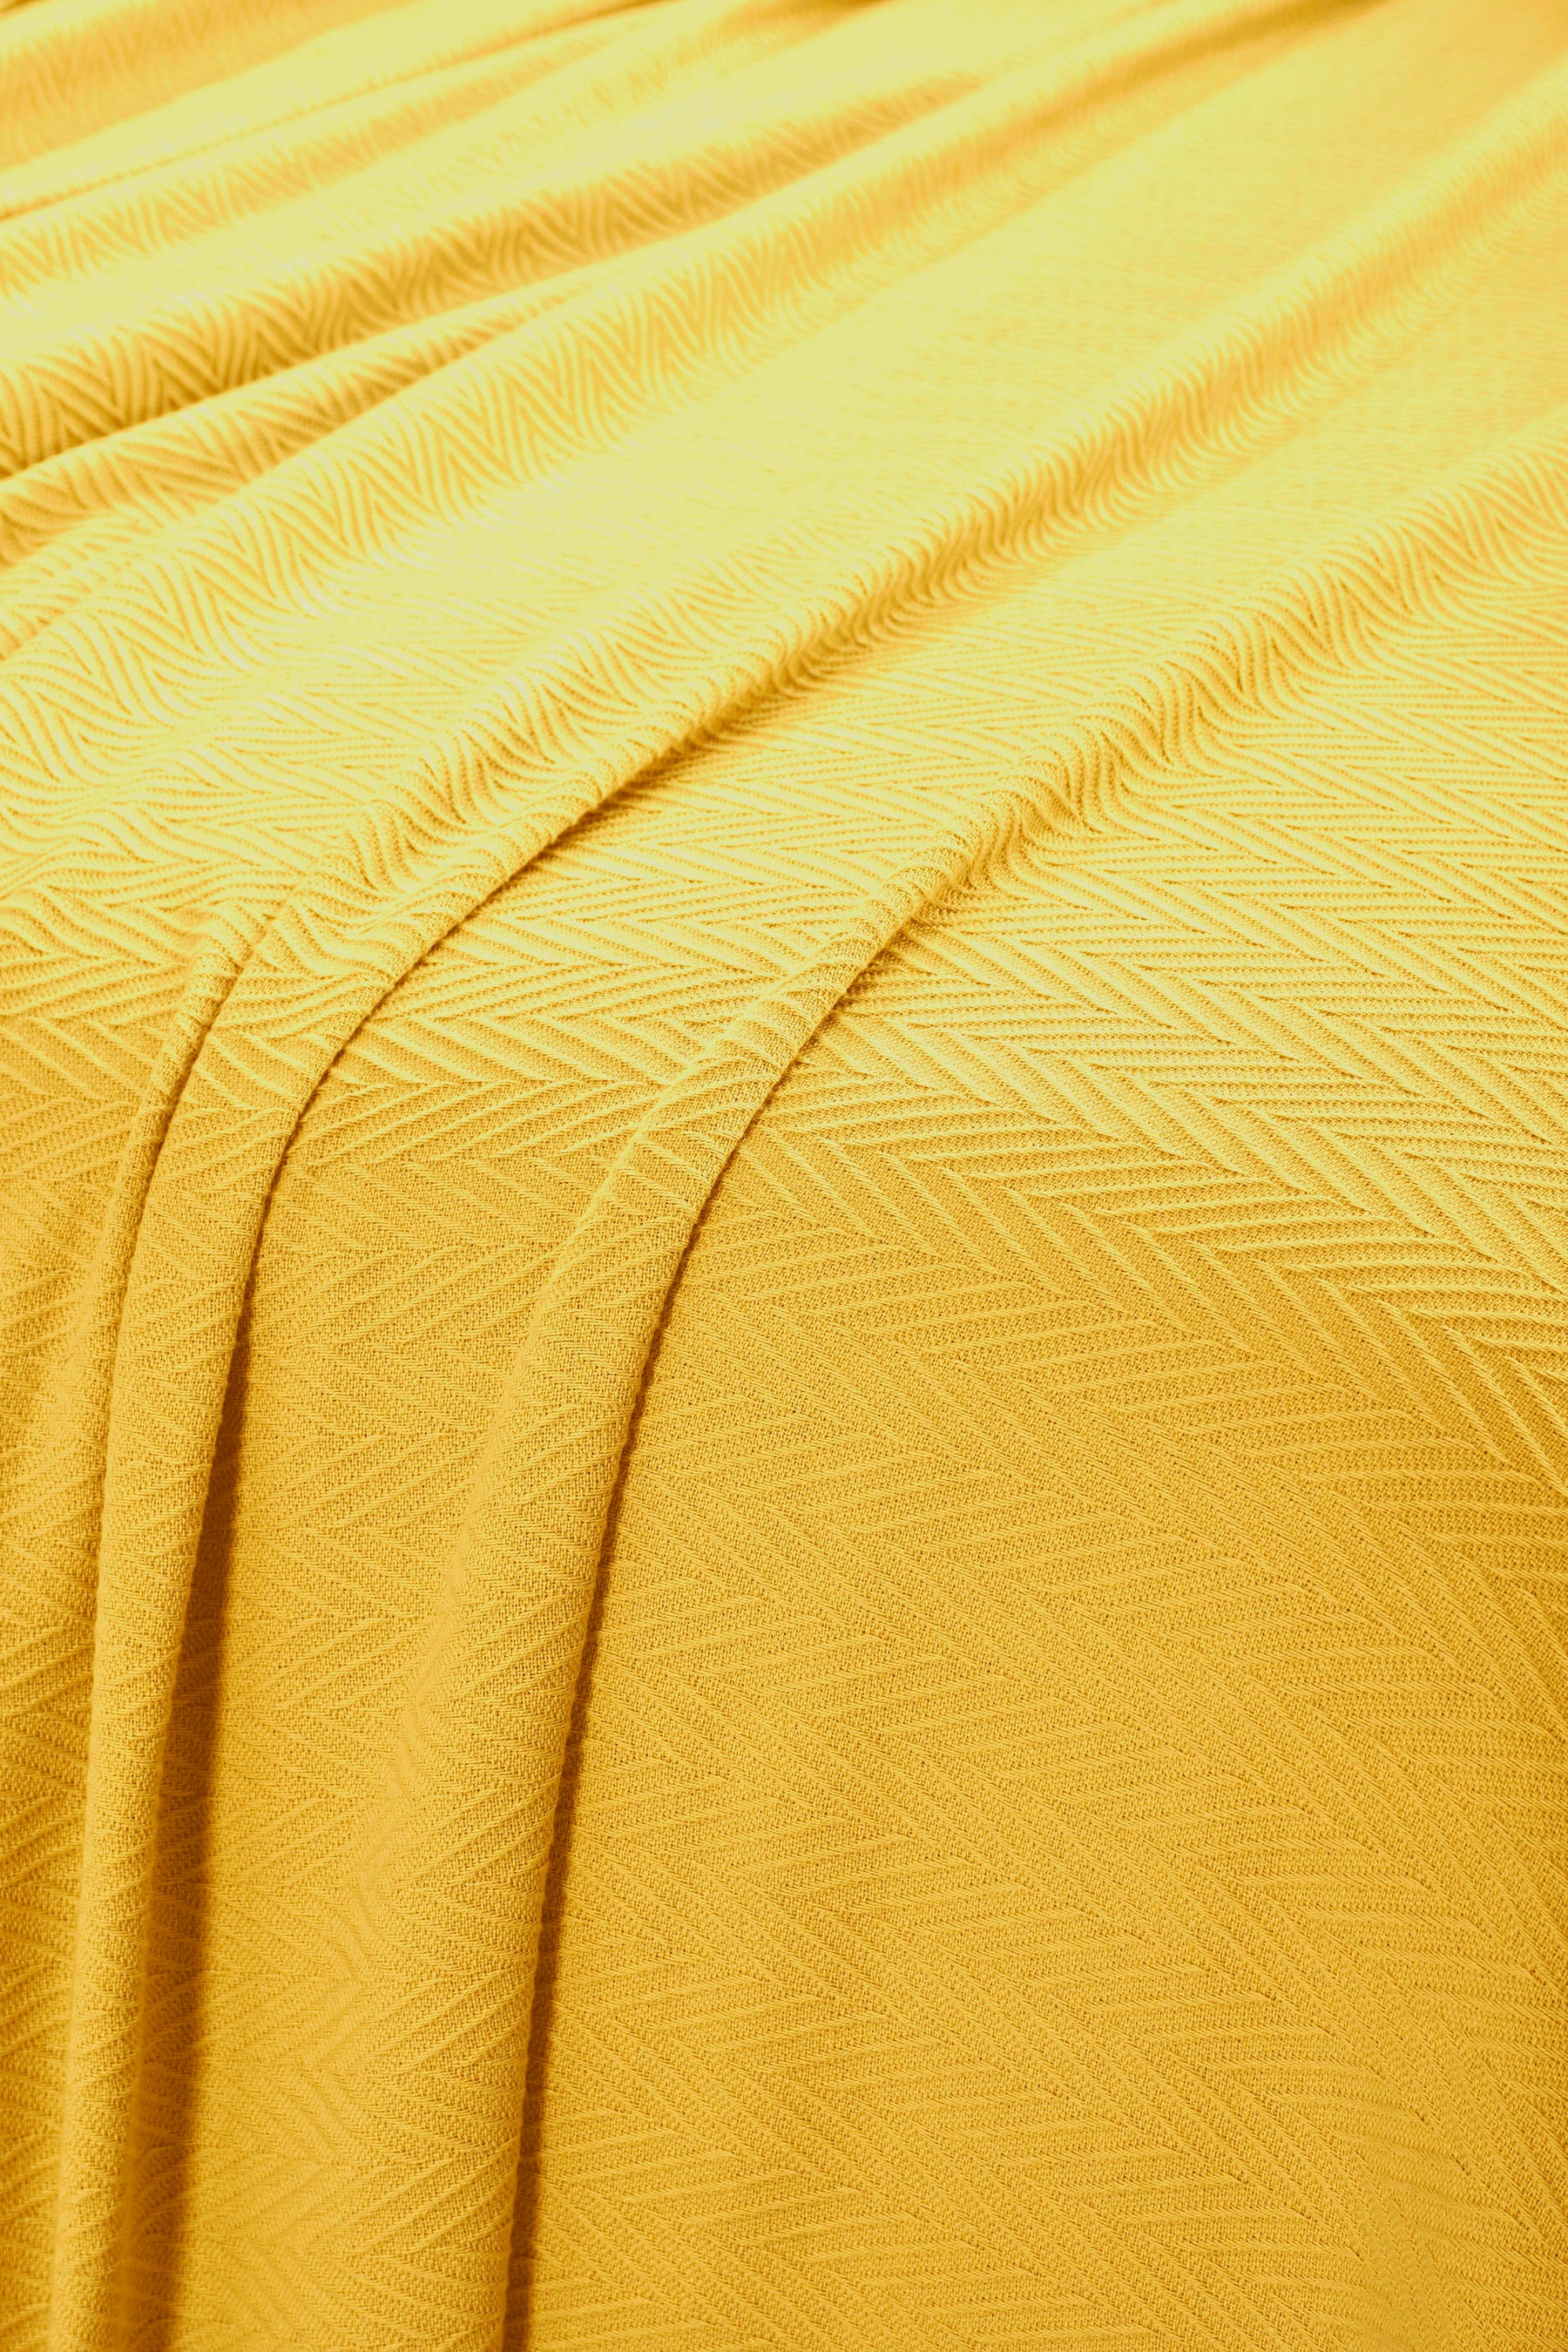 Chevron All-Season Cotton Blanket - Yellow